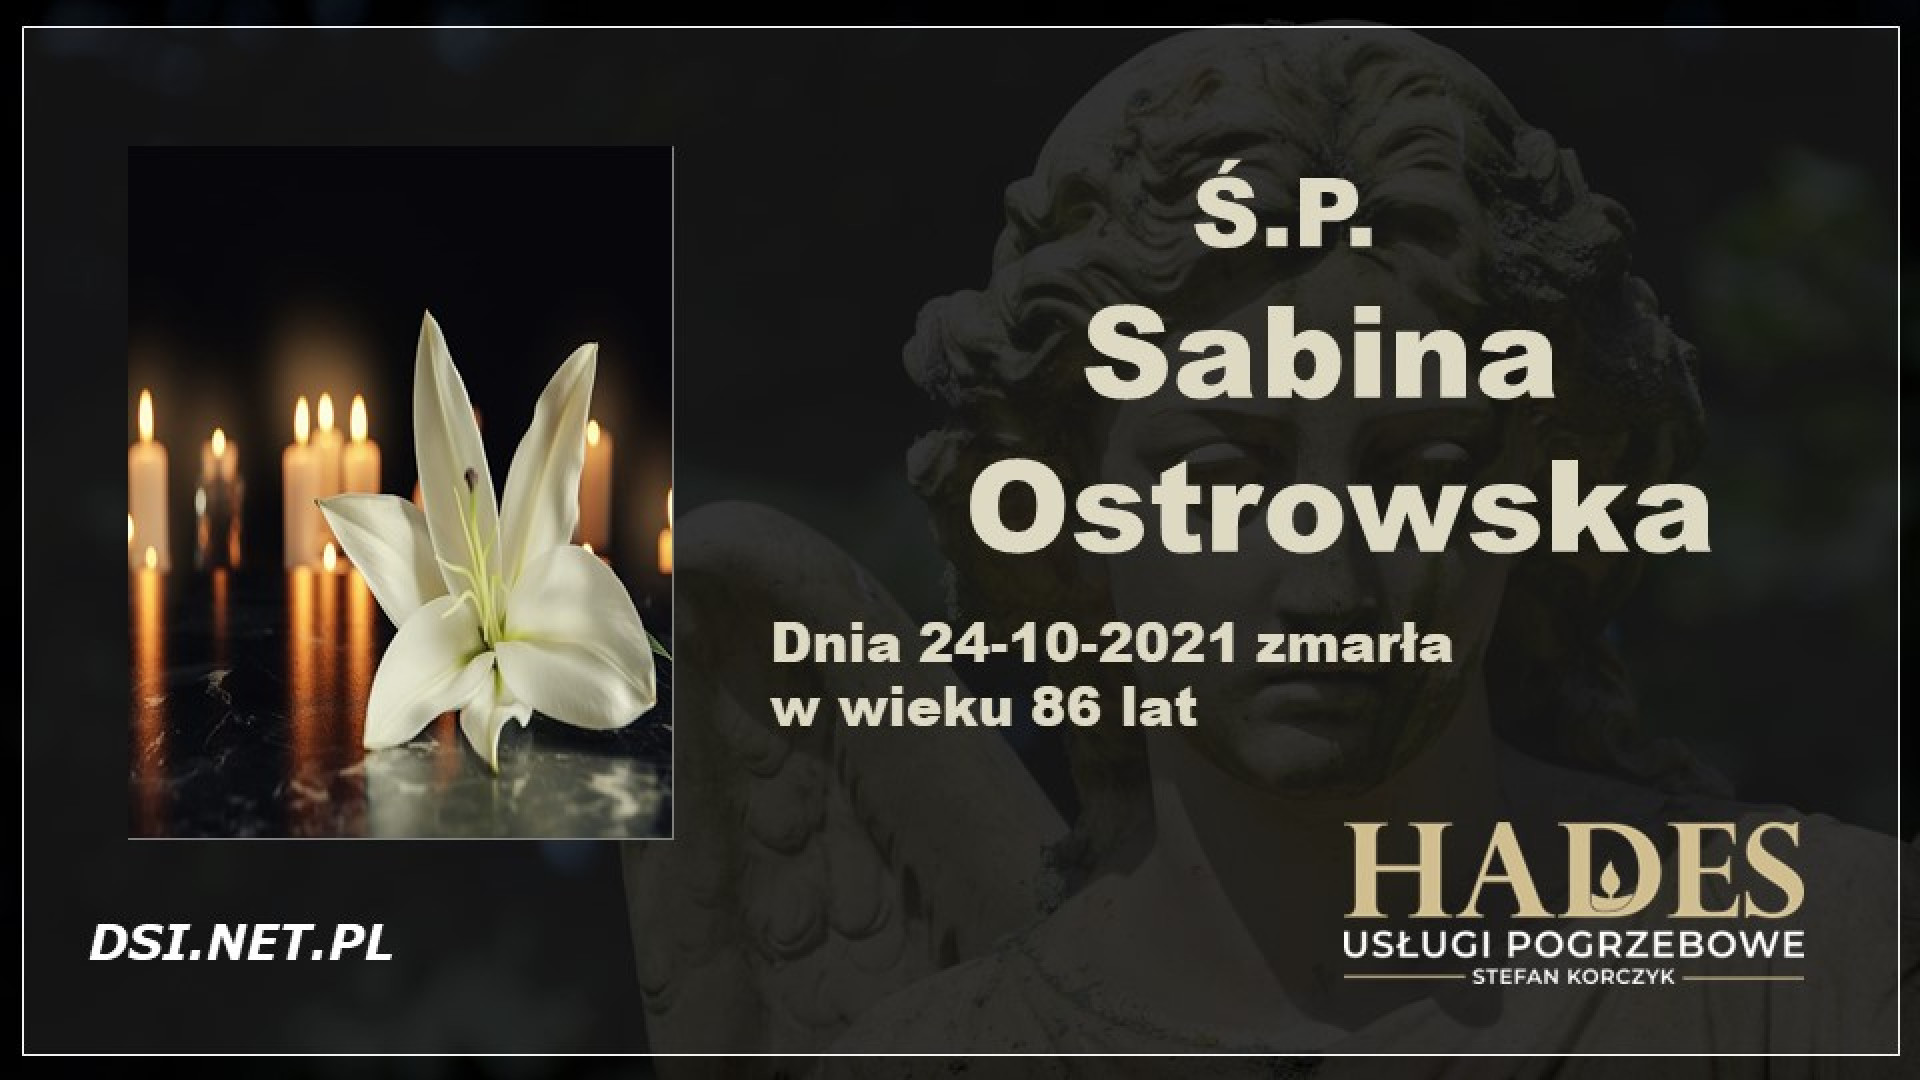 Ś.P. Sabina Ostrowska